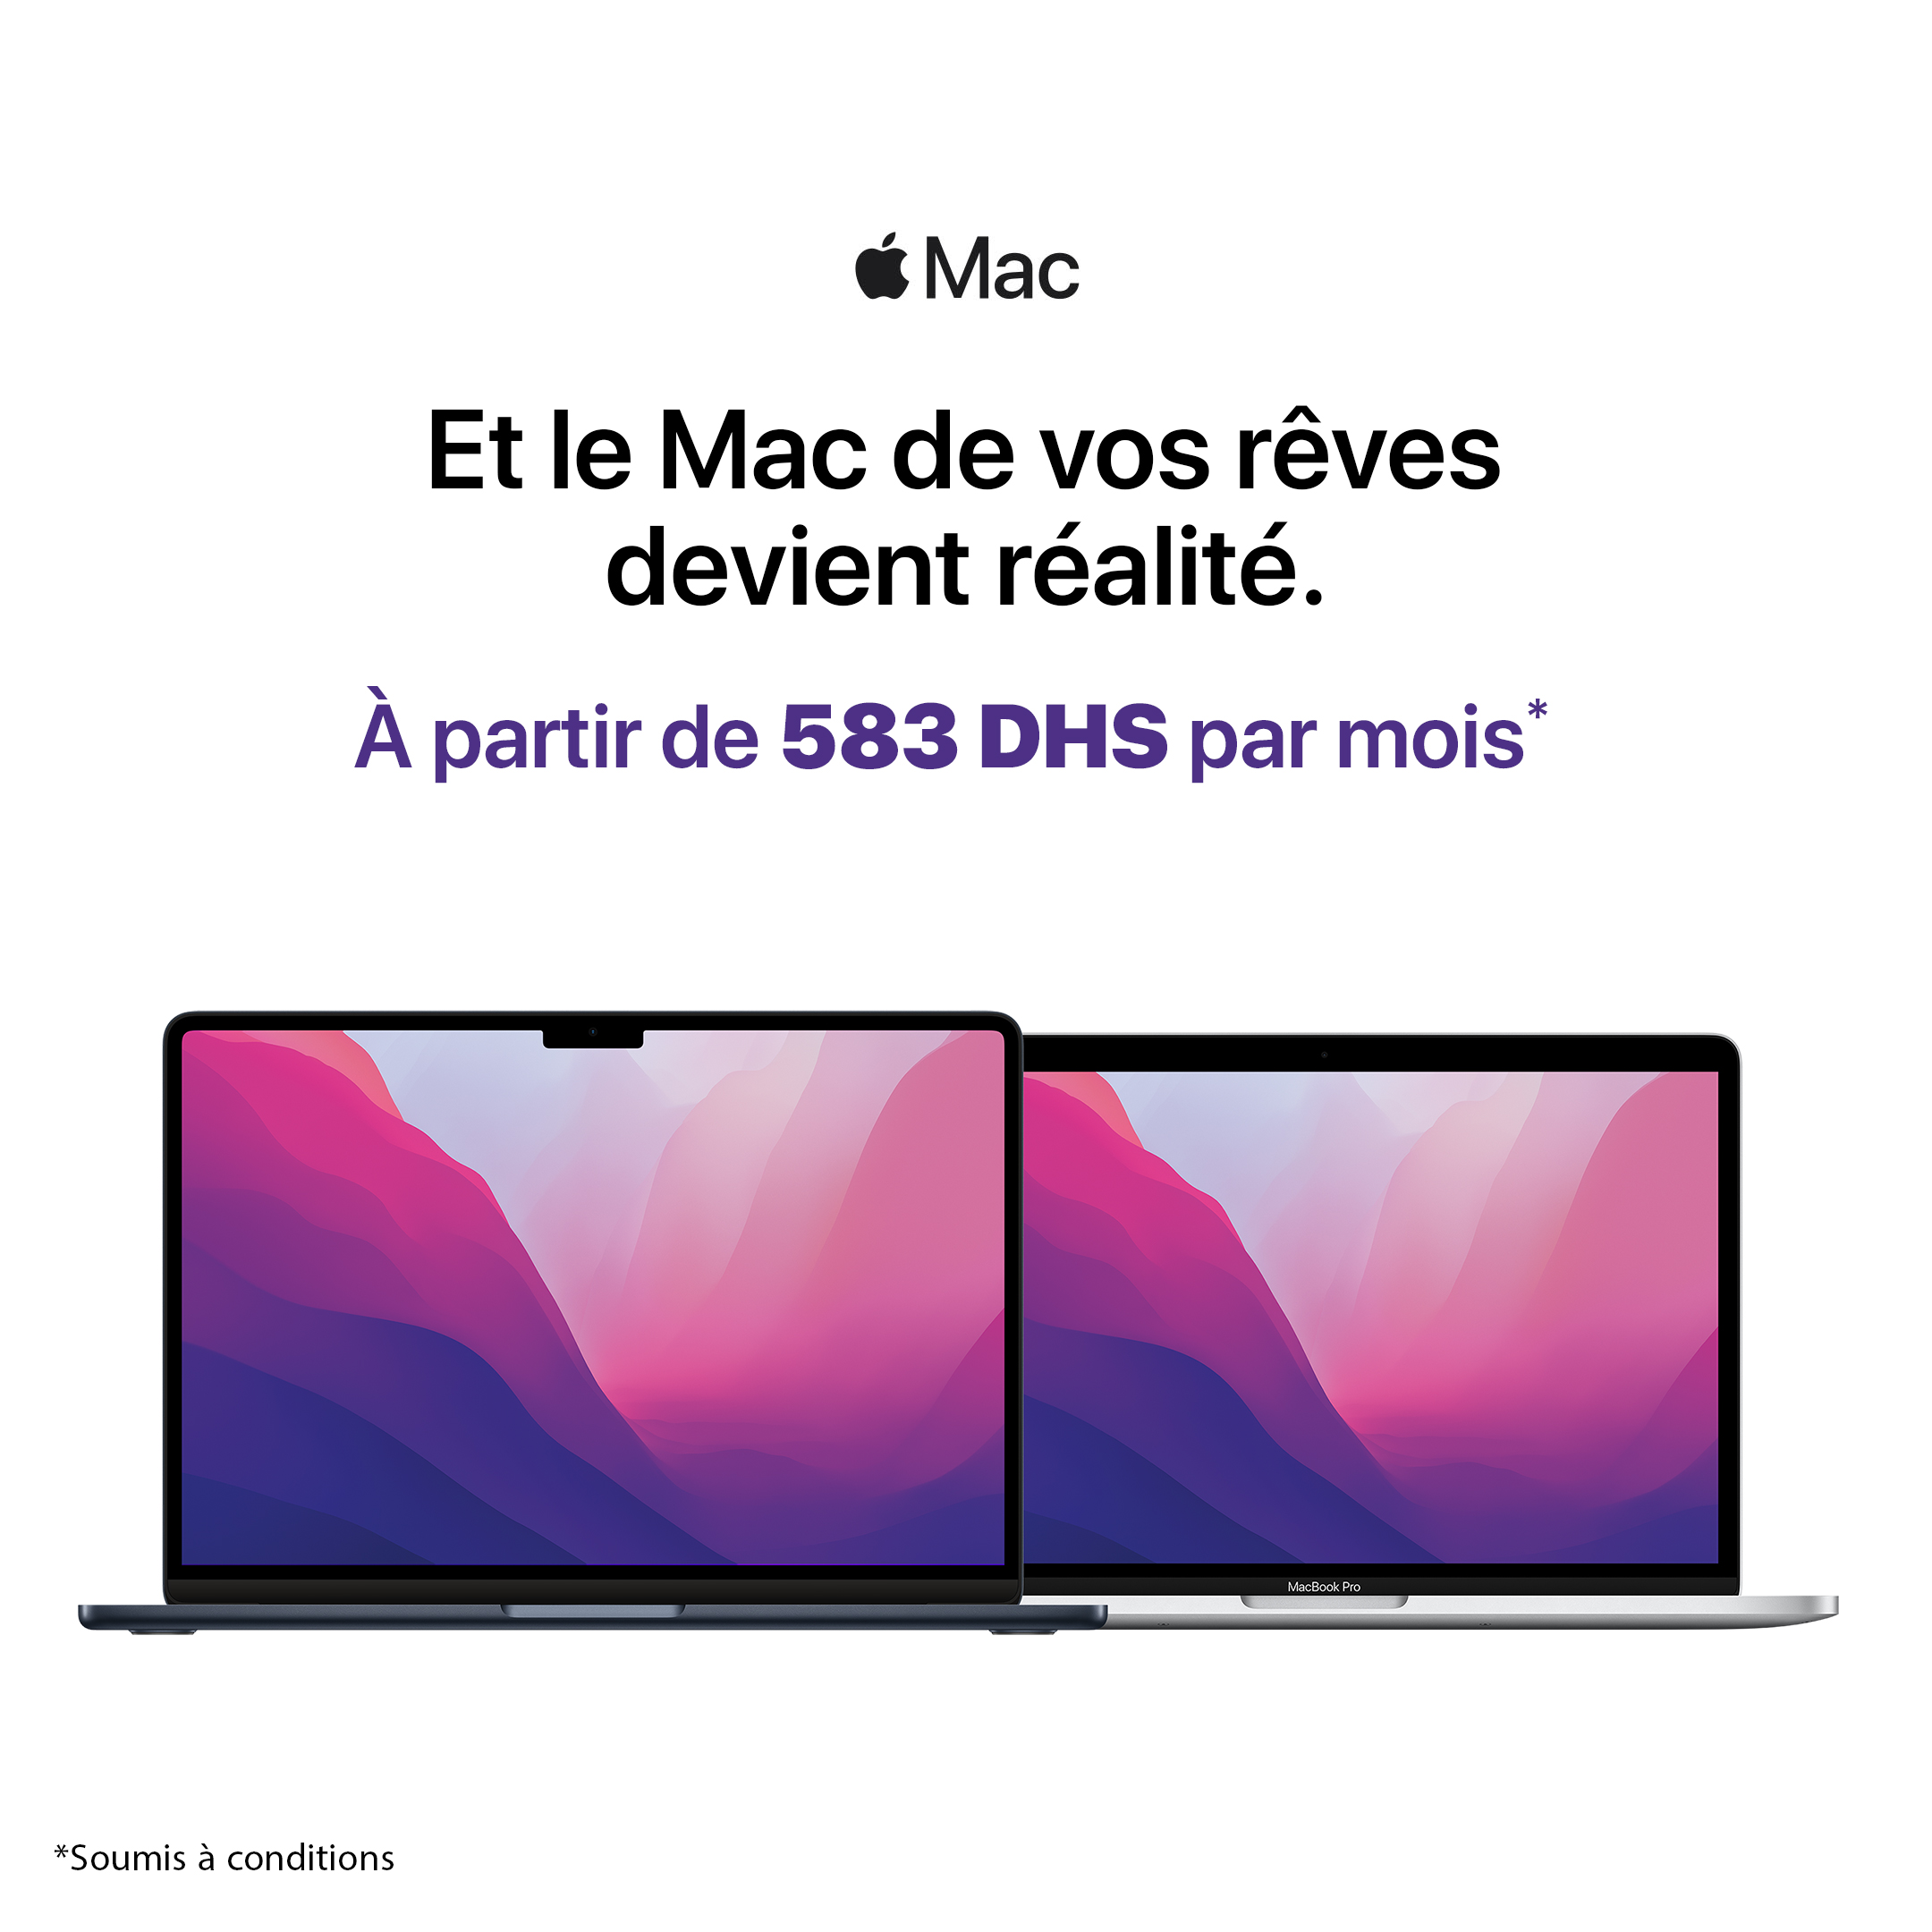 Mac offer